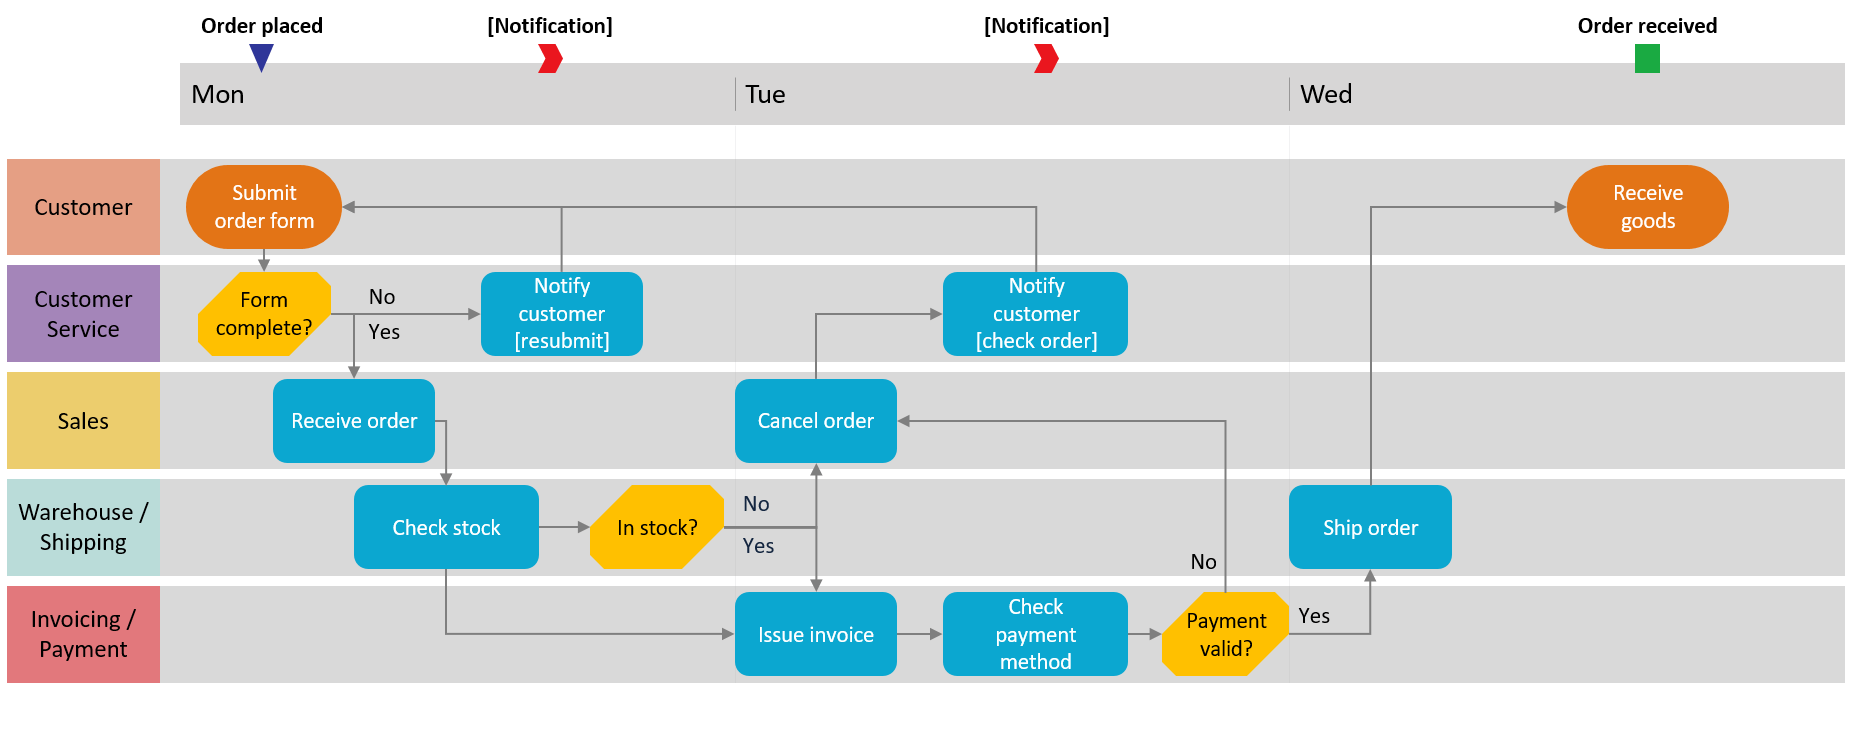 How to make swimlane diagrams in Excel + Free swimlane diagram templates